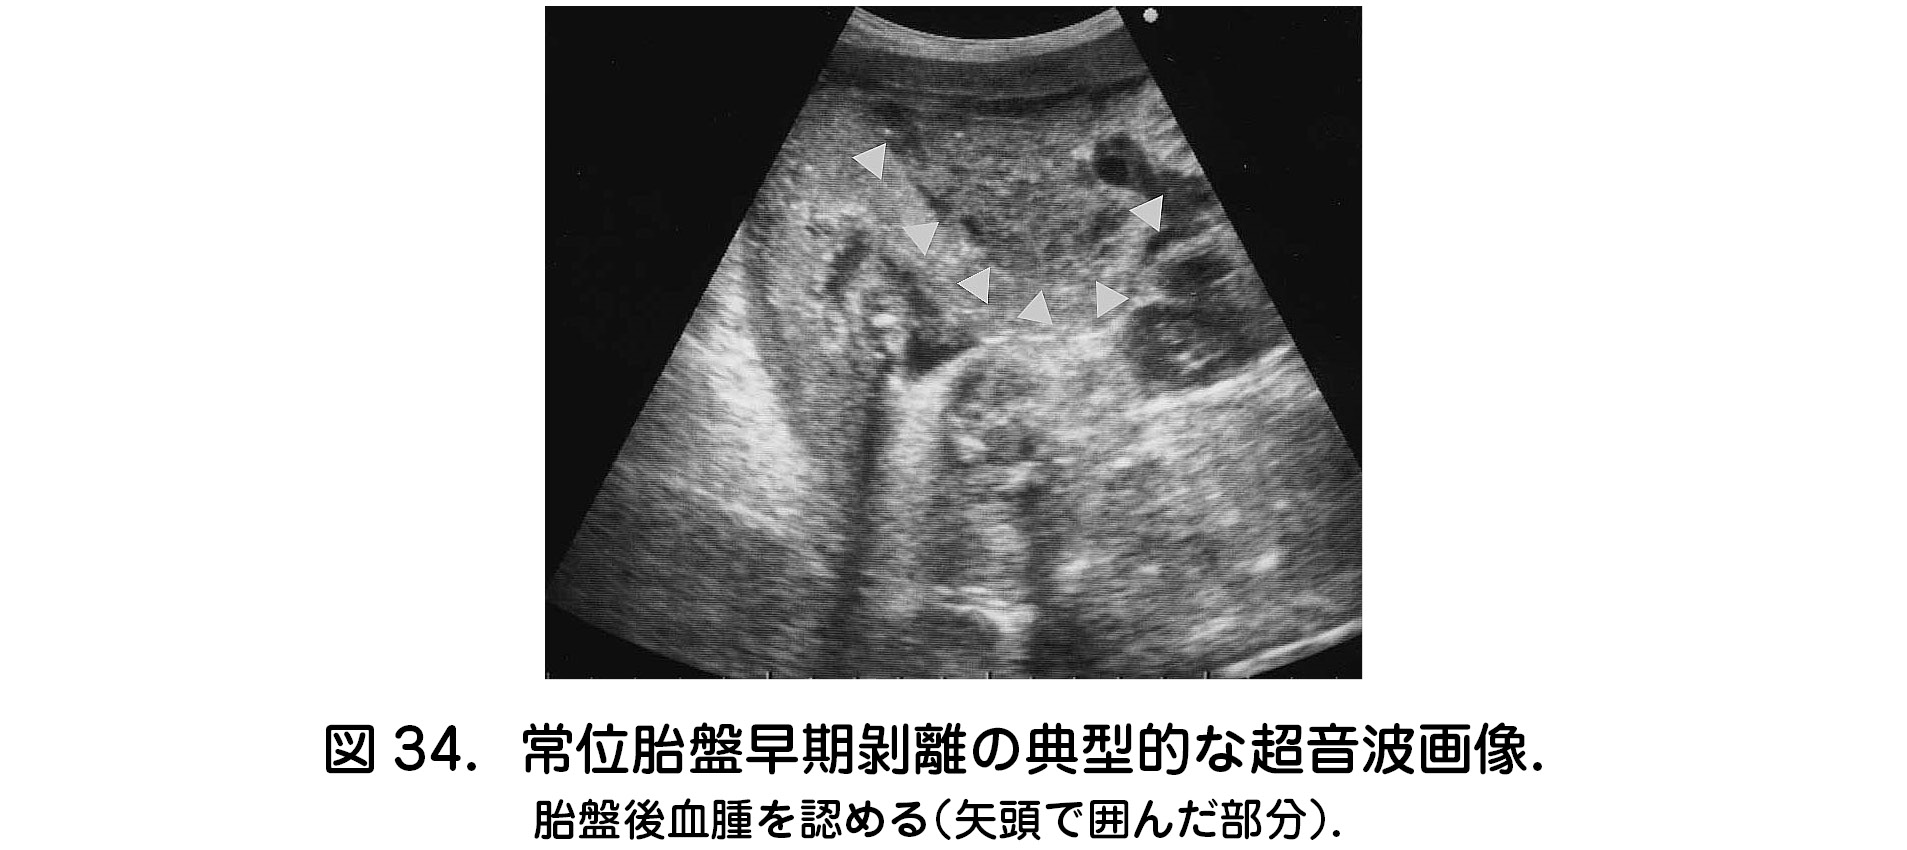 6 常位胎盤早期剝離 日本産婦人科医会